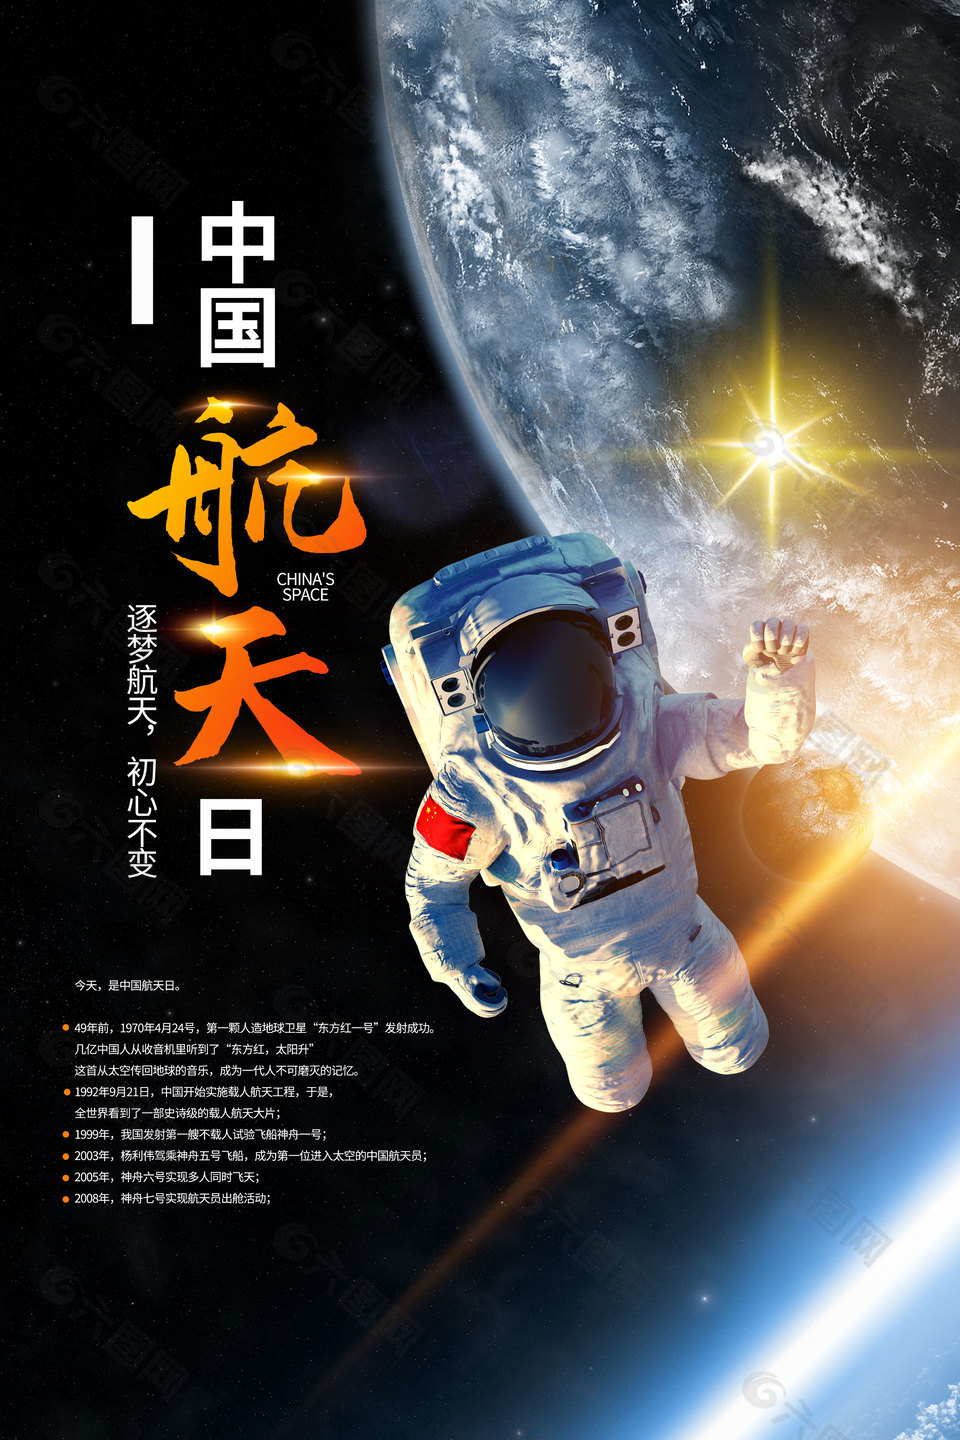 中国航天日主题教育模板